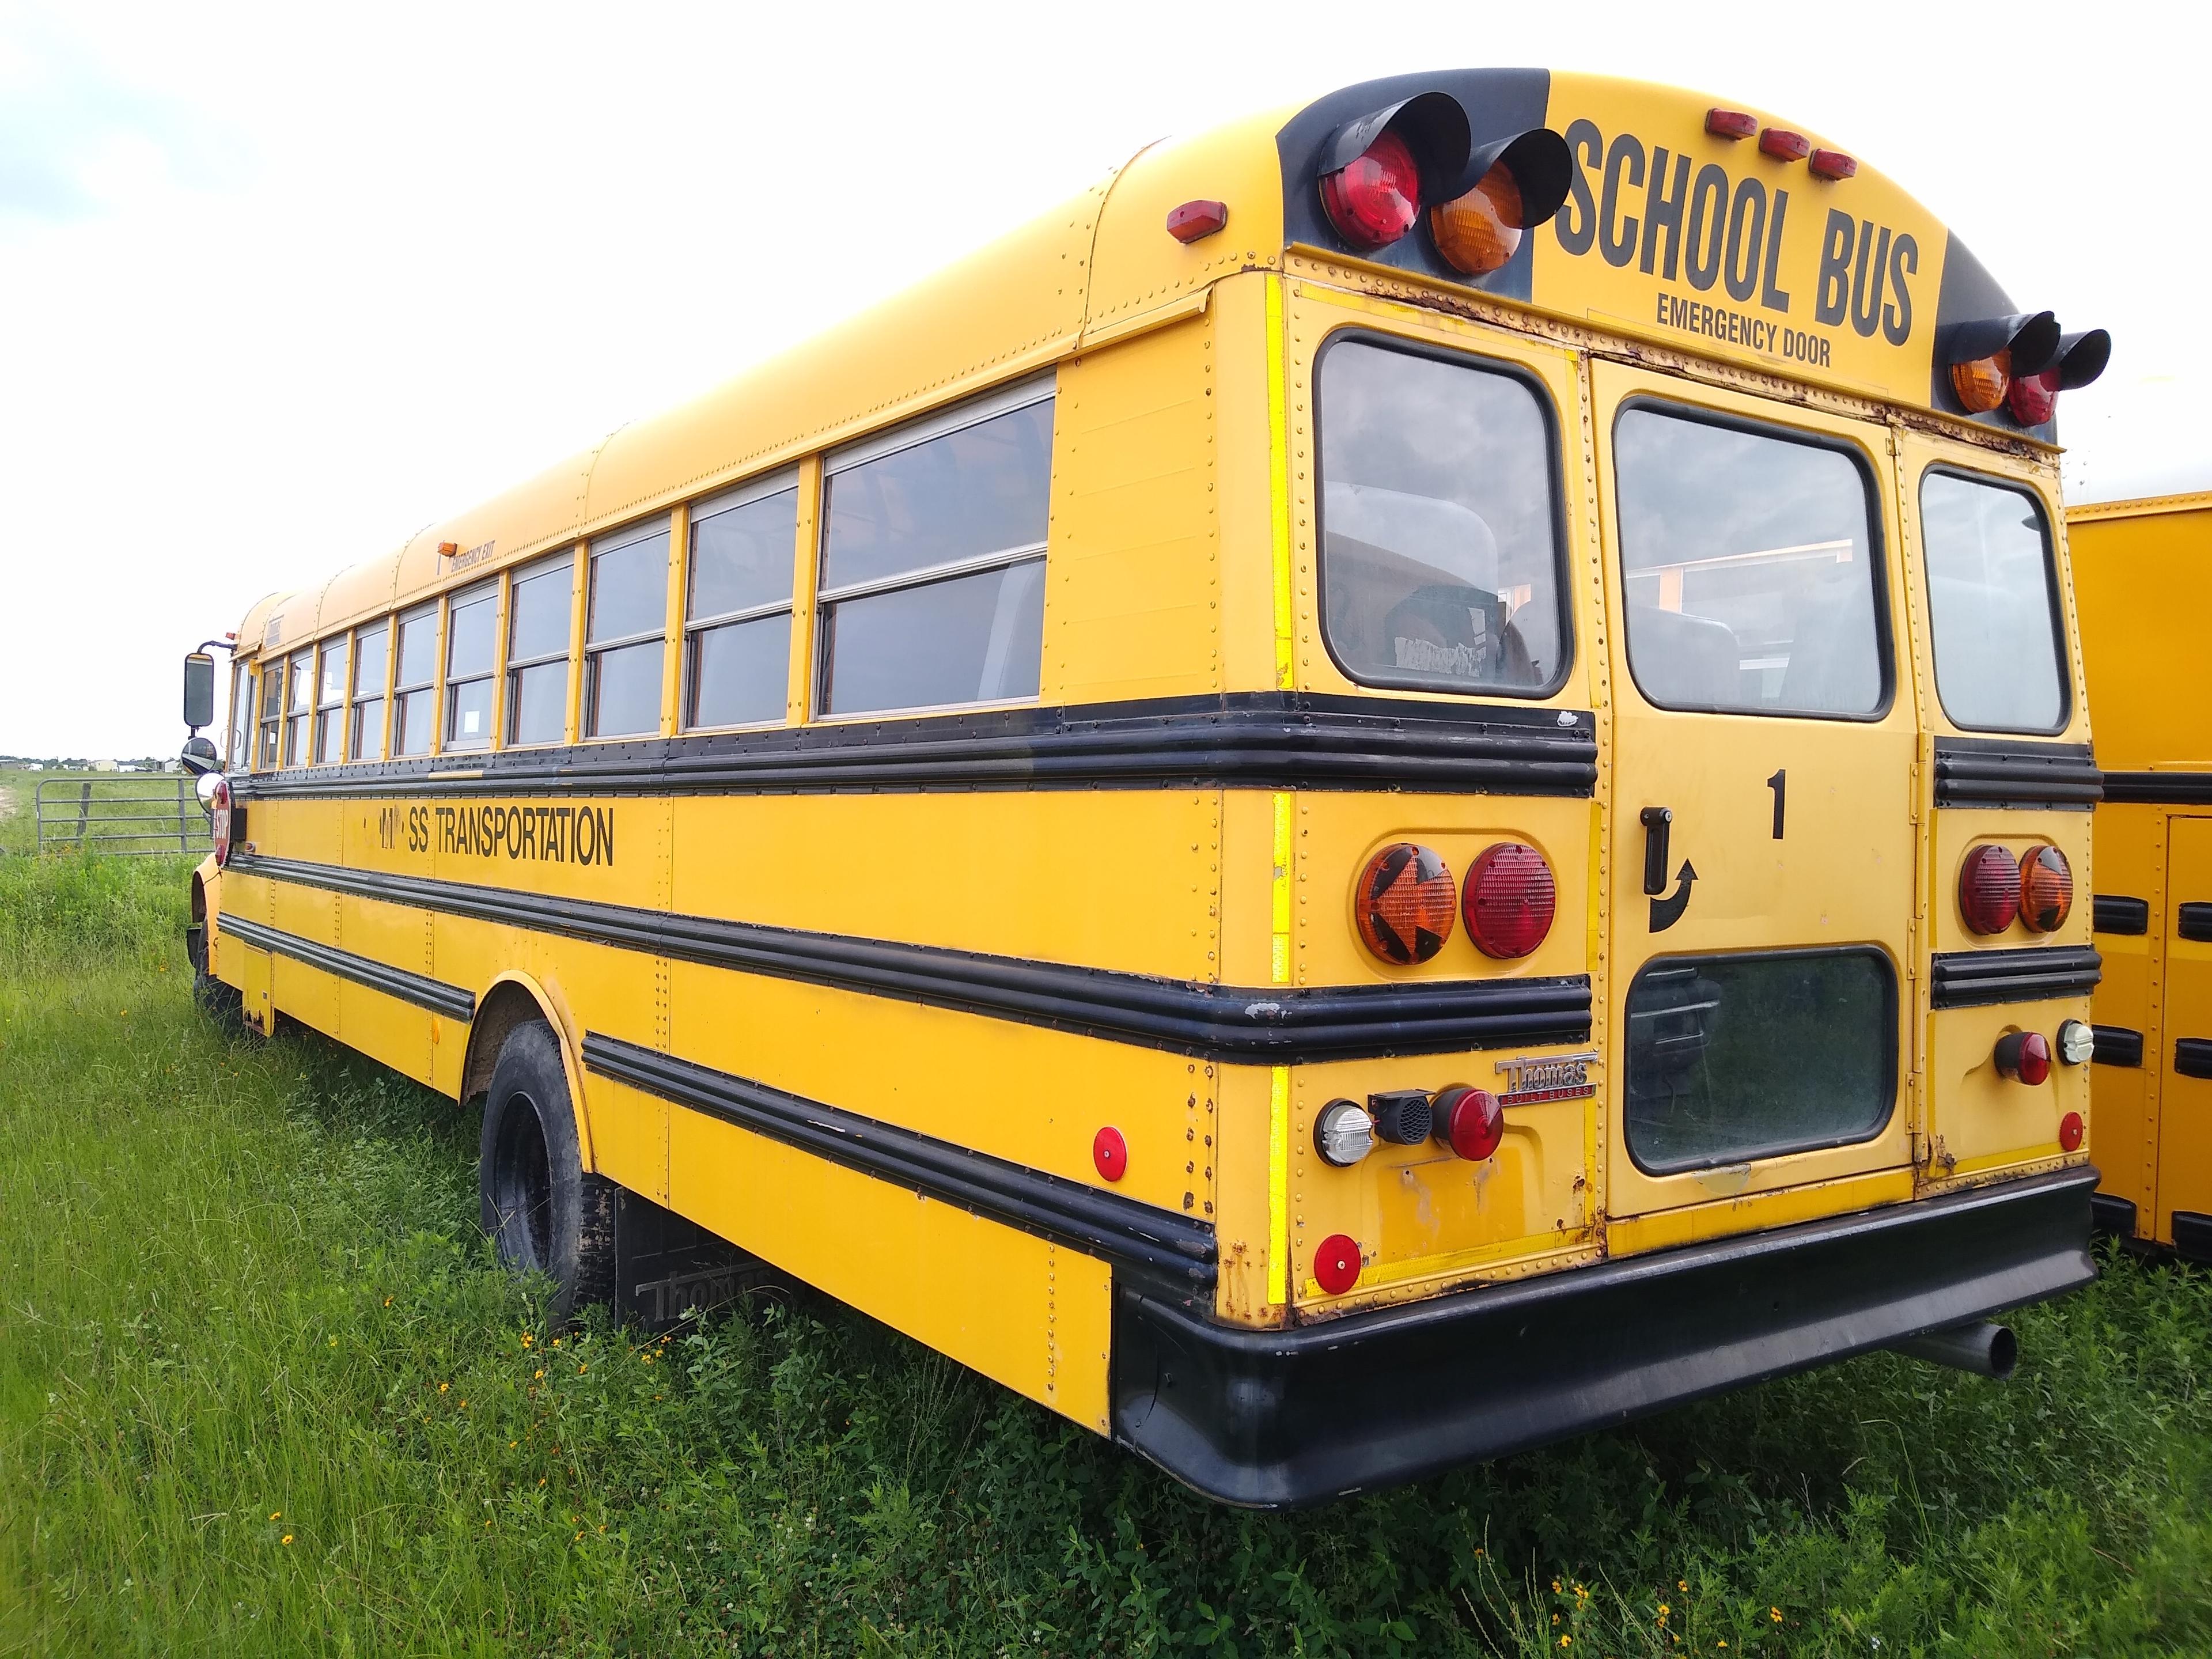 1998 Thomas Built School Bus - 65 Passenger- 122323 Miles - Clean Title - Runs Great